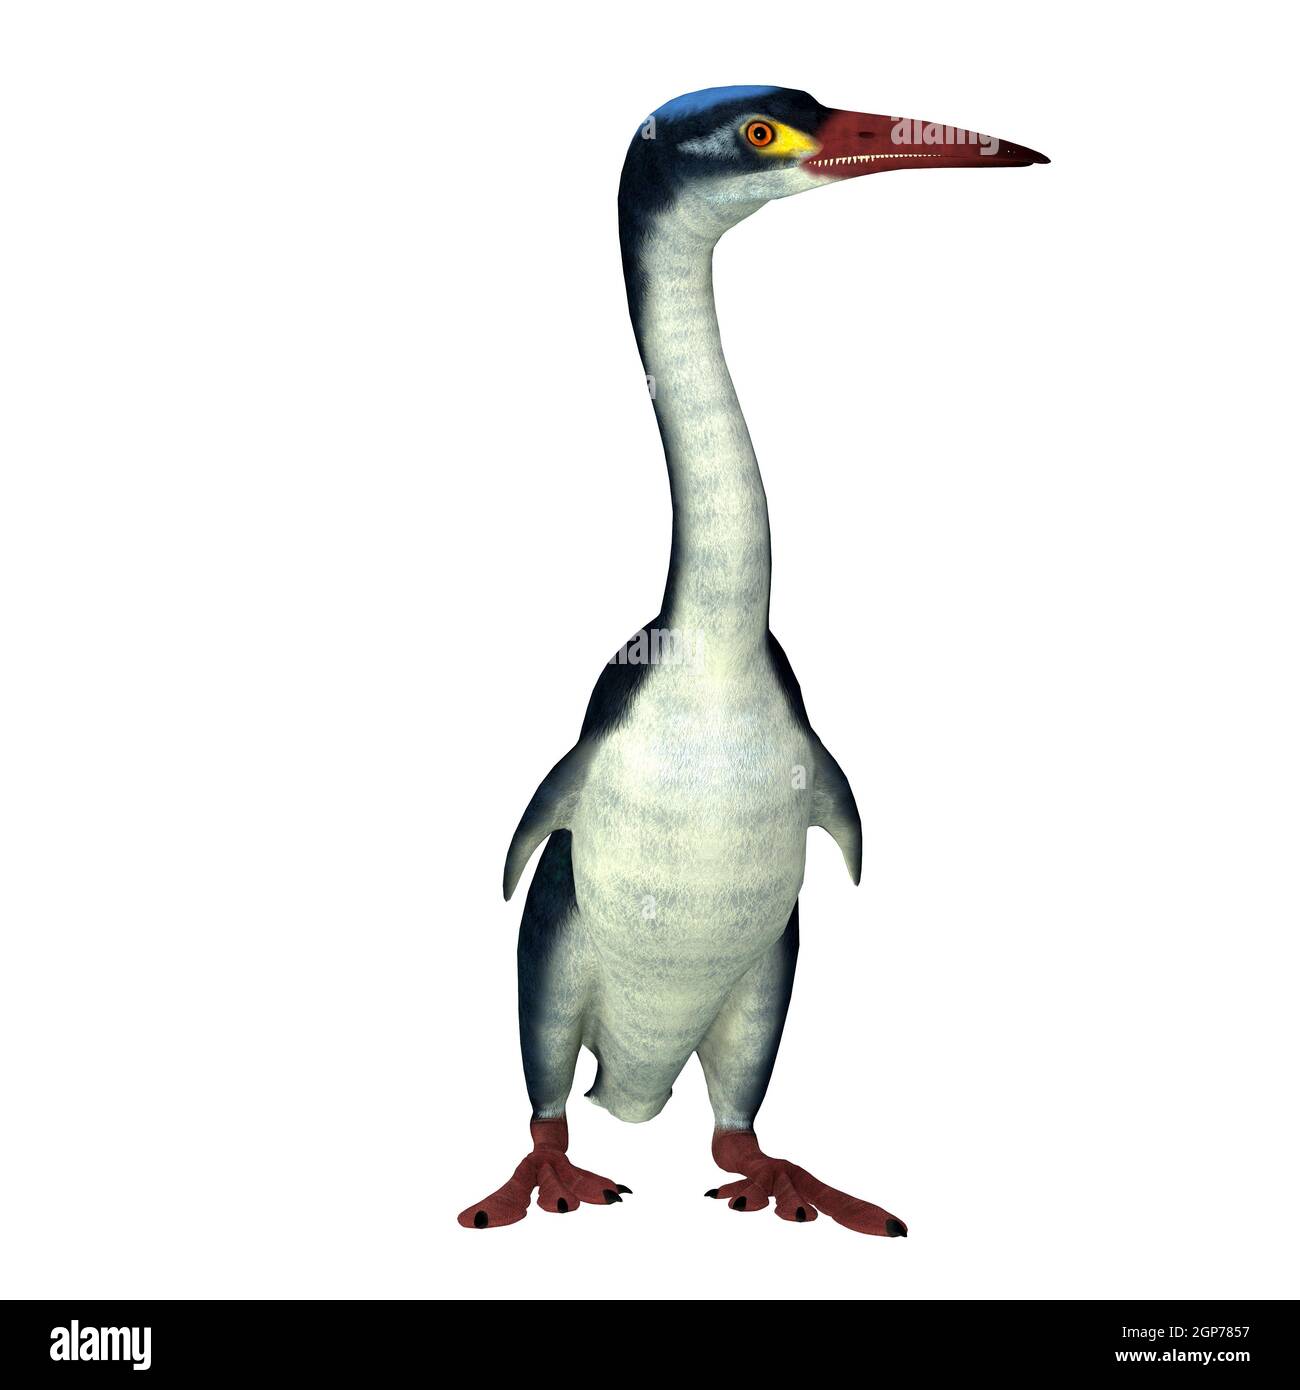 Hesperornis es un pájaro extinto similar a un cormorán que vivió en América del Norte y Rusia durante el período Cretácico. Foto de stock